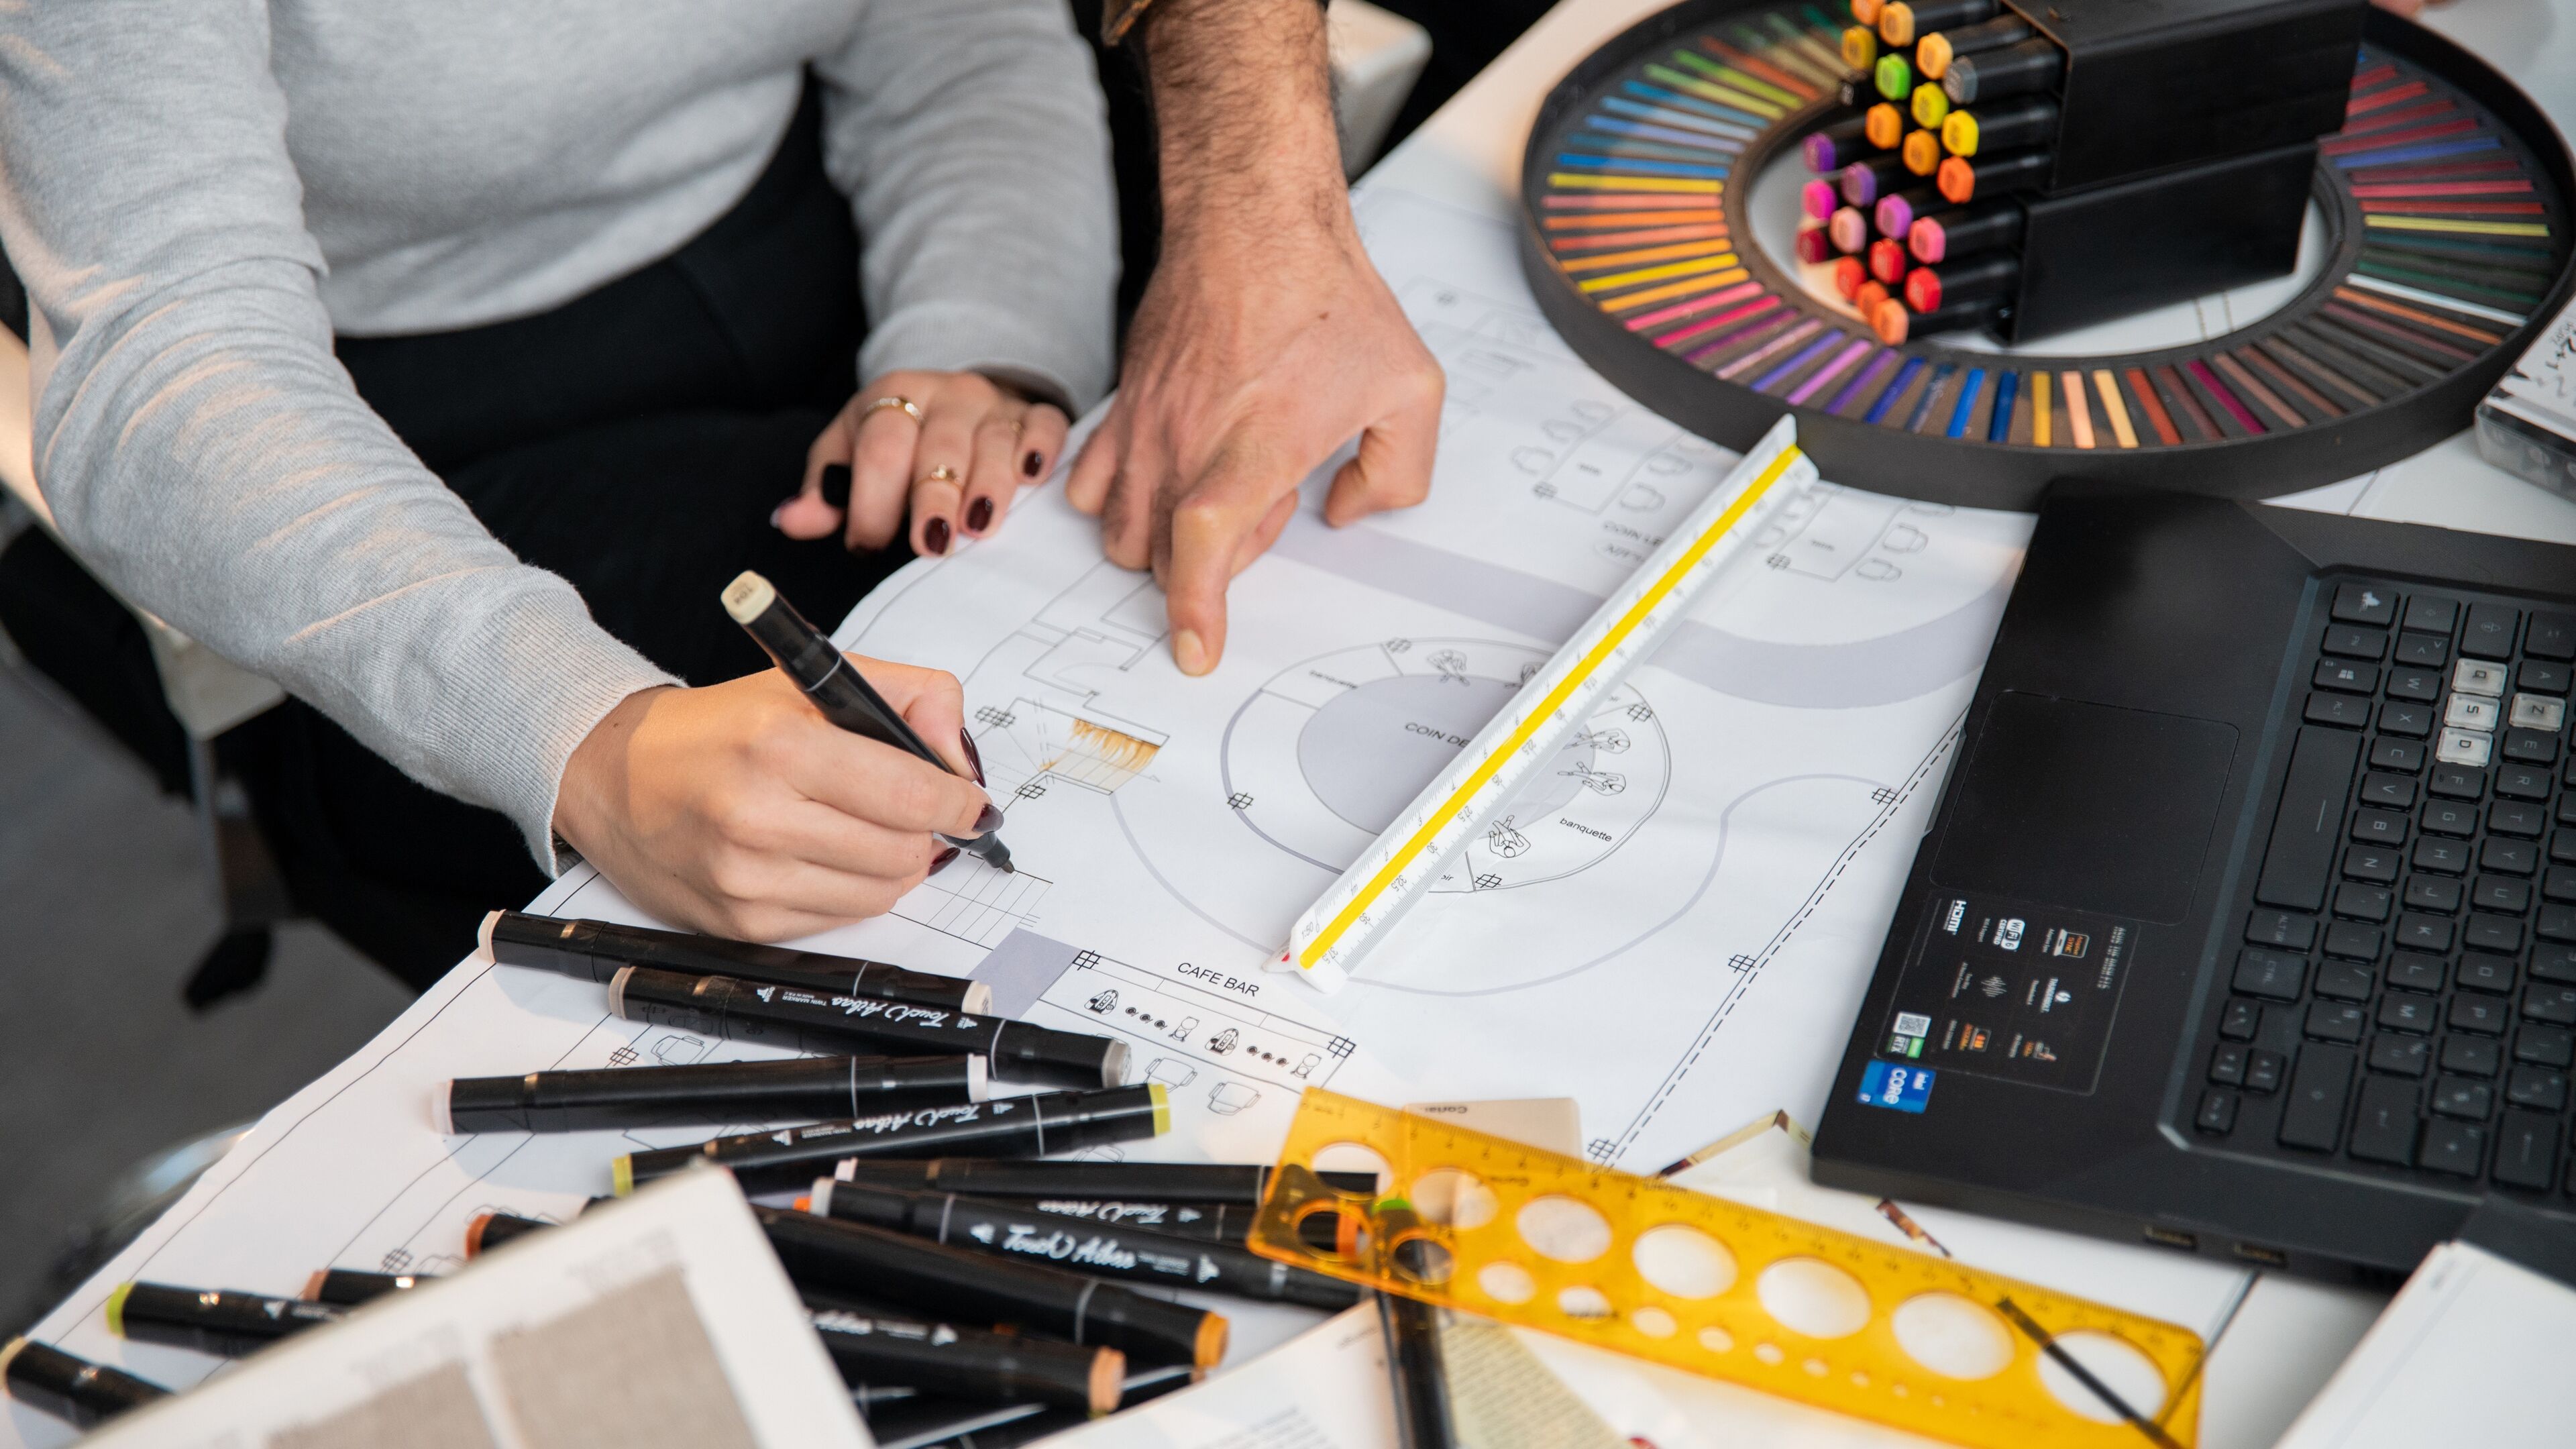 Deux individus collaborent sur un plan architectural, entourés d'outils de conception et de palettes de couleurs.